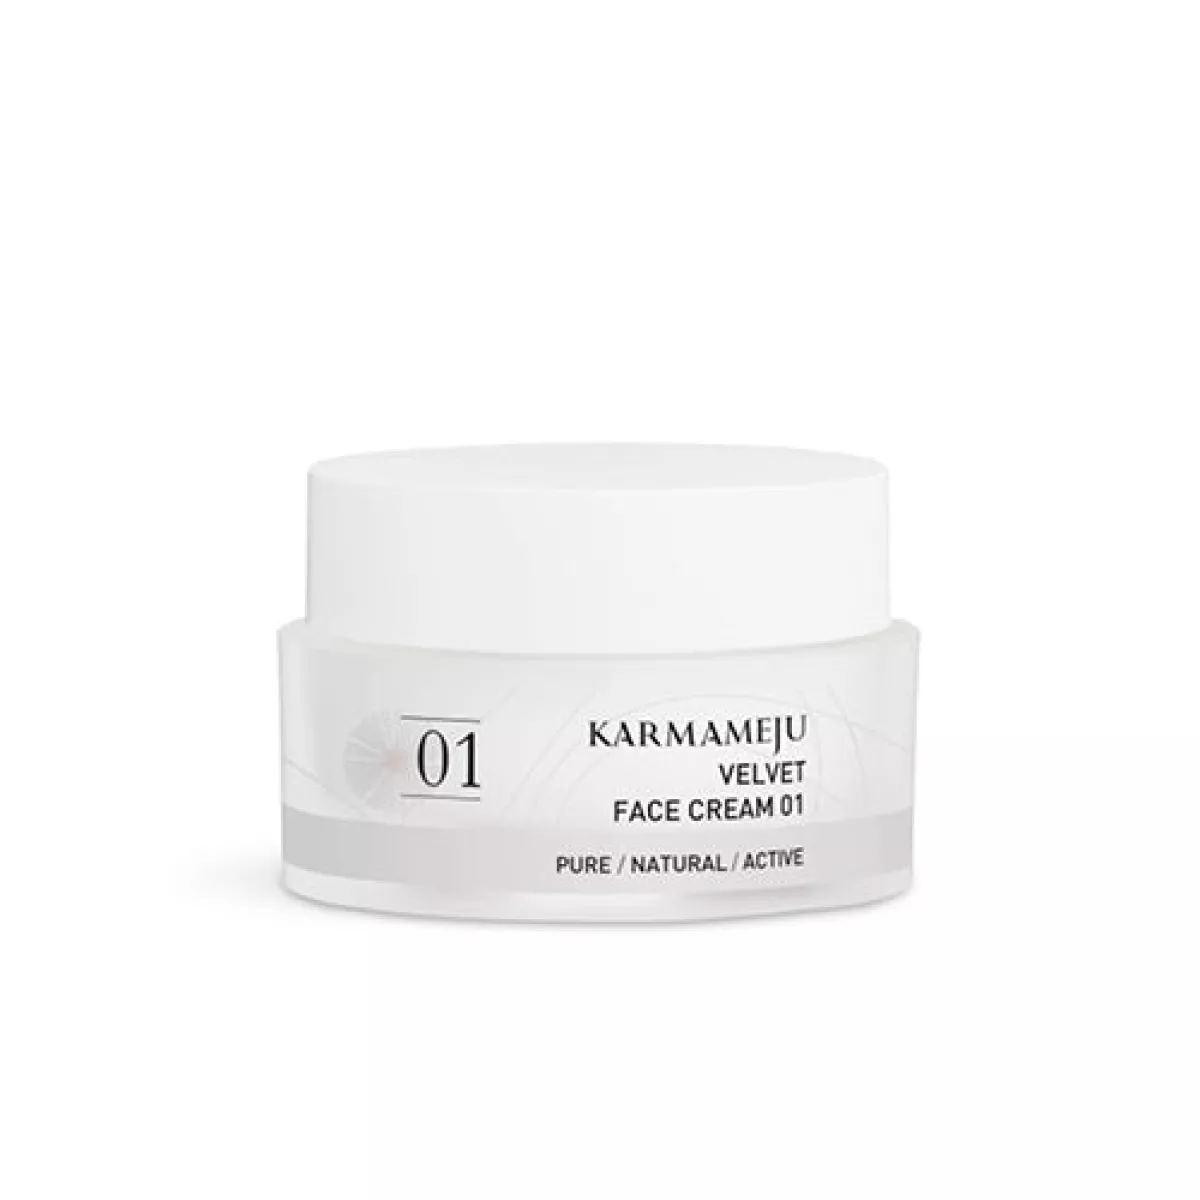 #1 - Karmameju Velvet ansigtscreme 01, 50 ml